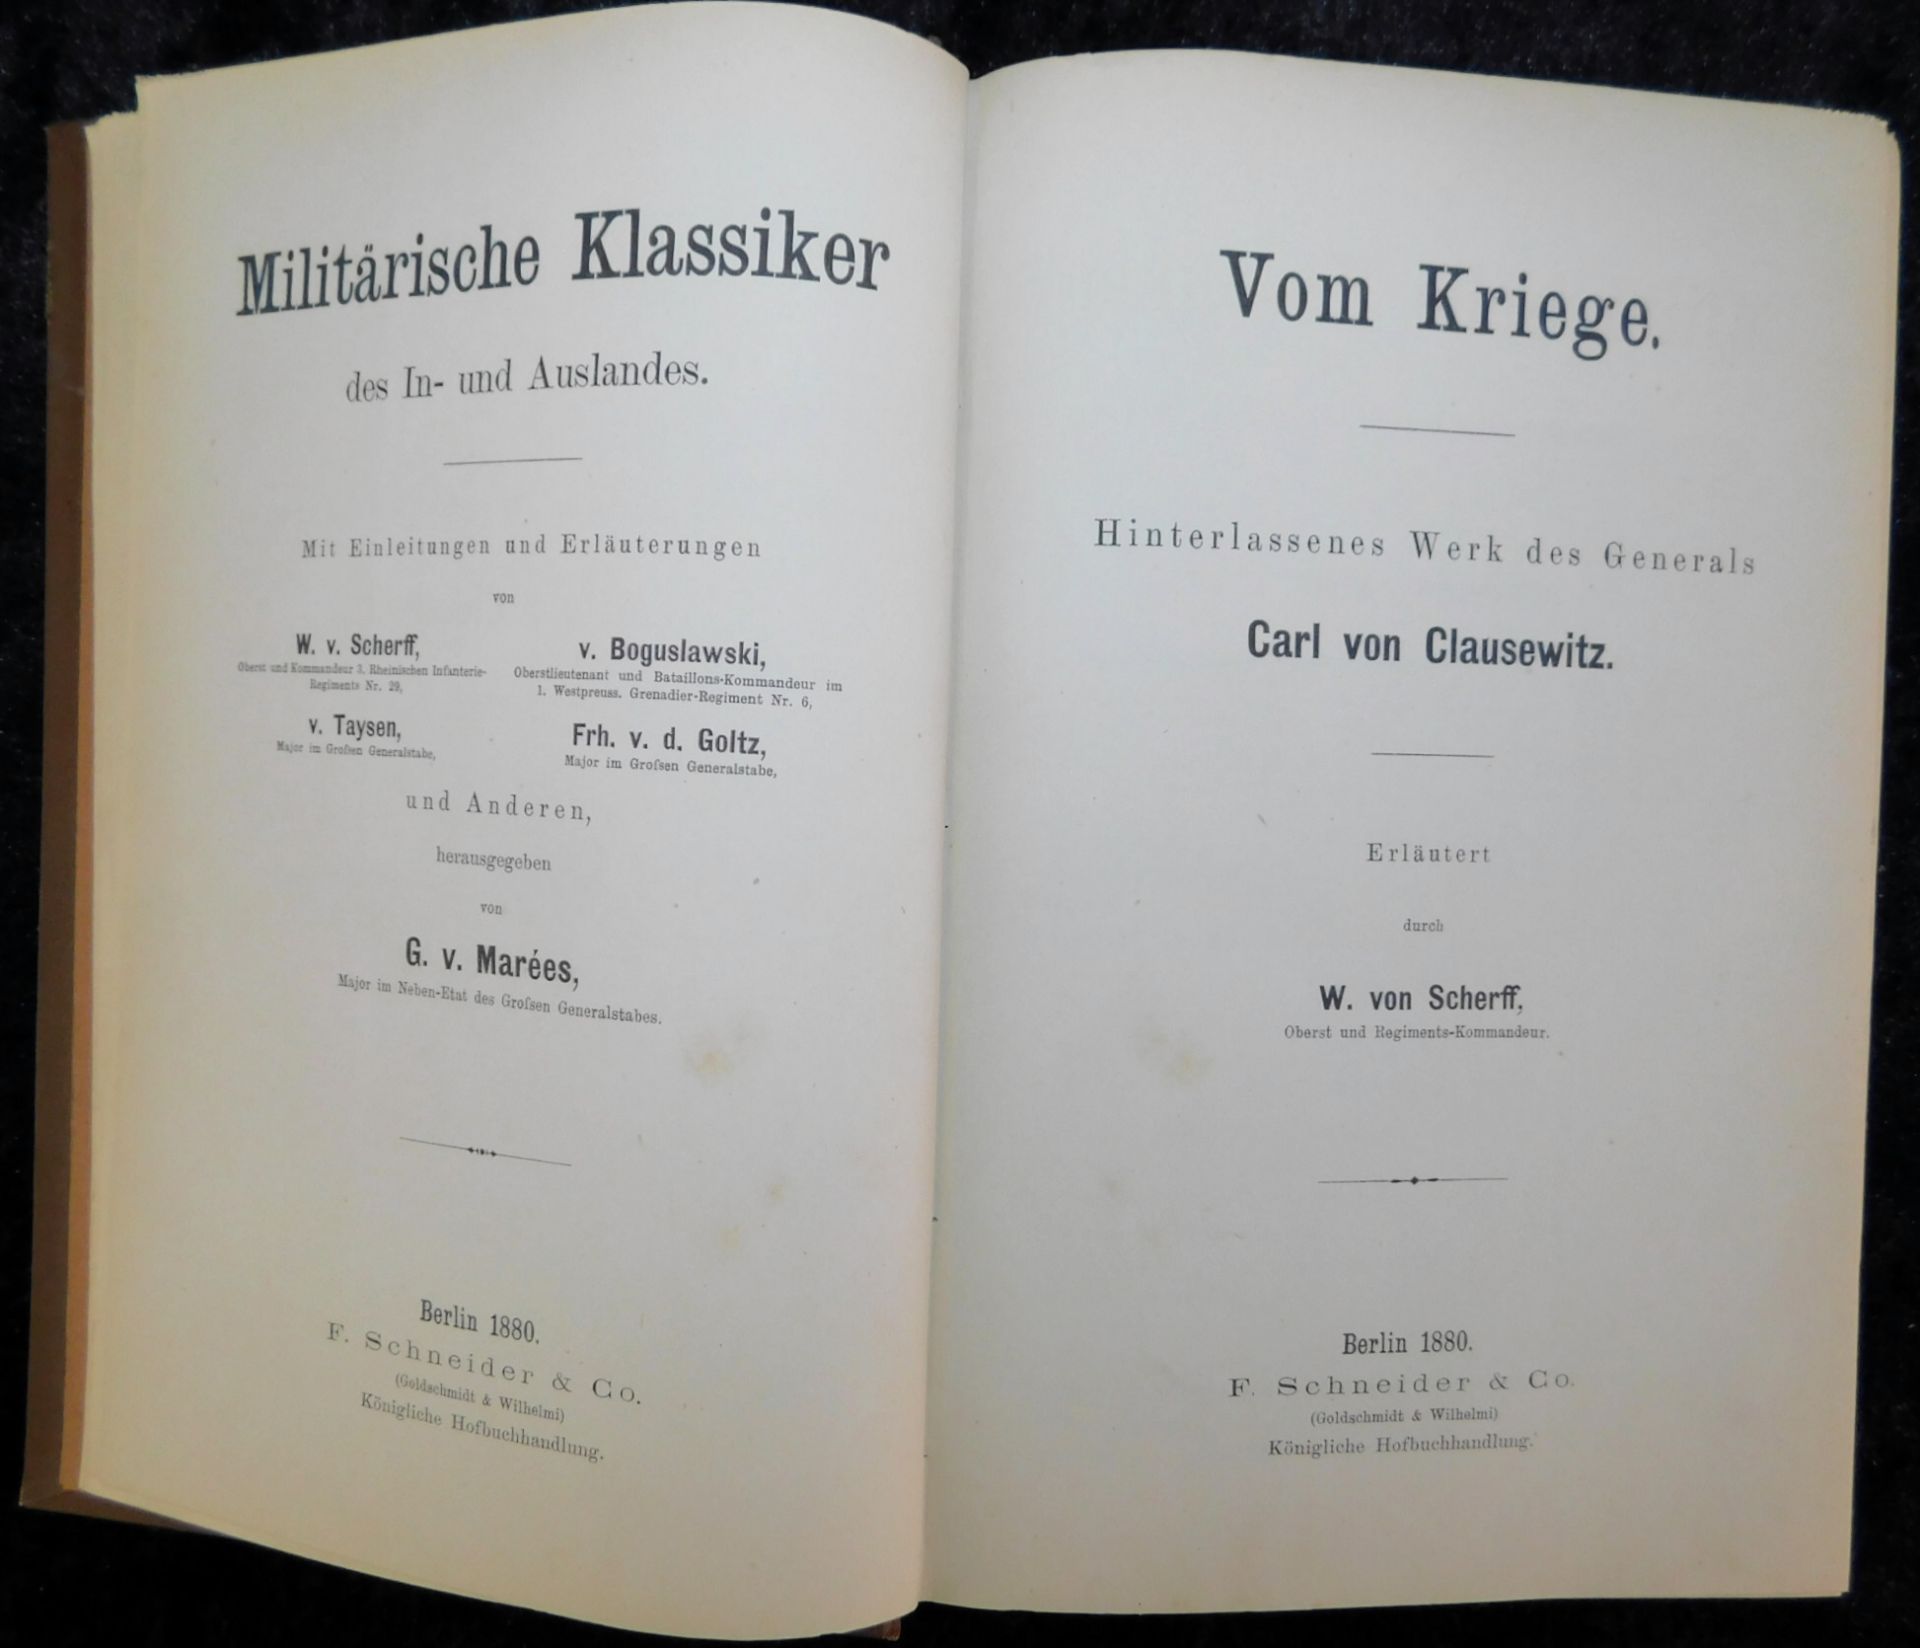 Vom Kriege, Werke von Clausewitz, W. von Scherff, Goldschmidt & Wilhelmi, Berlin 1880V - Image 2 of 2